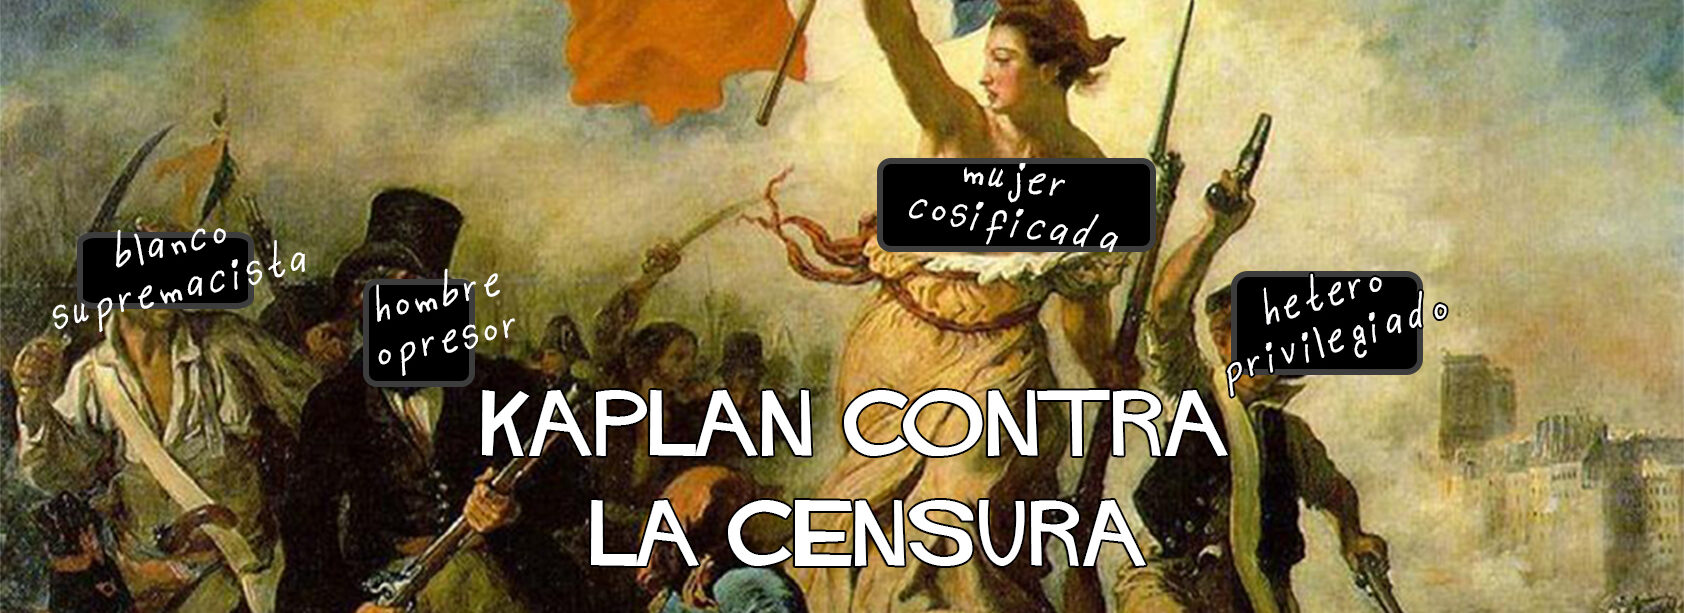 Kaplan contra la censura